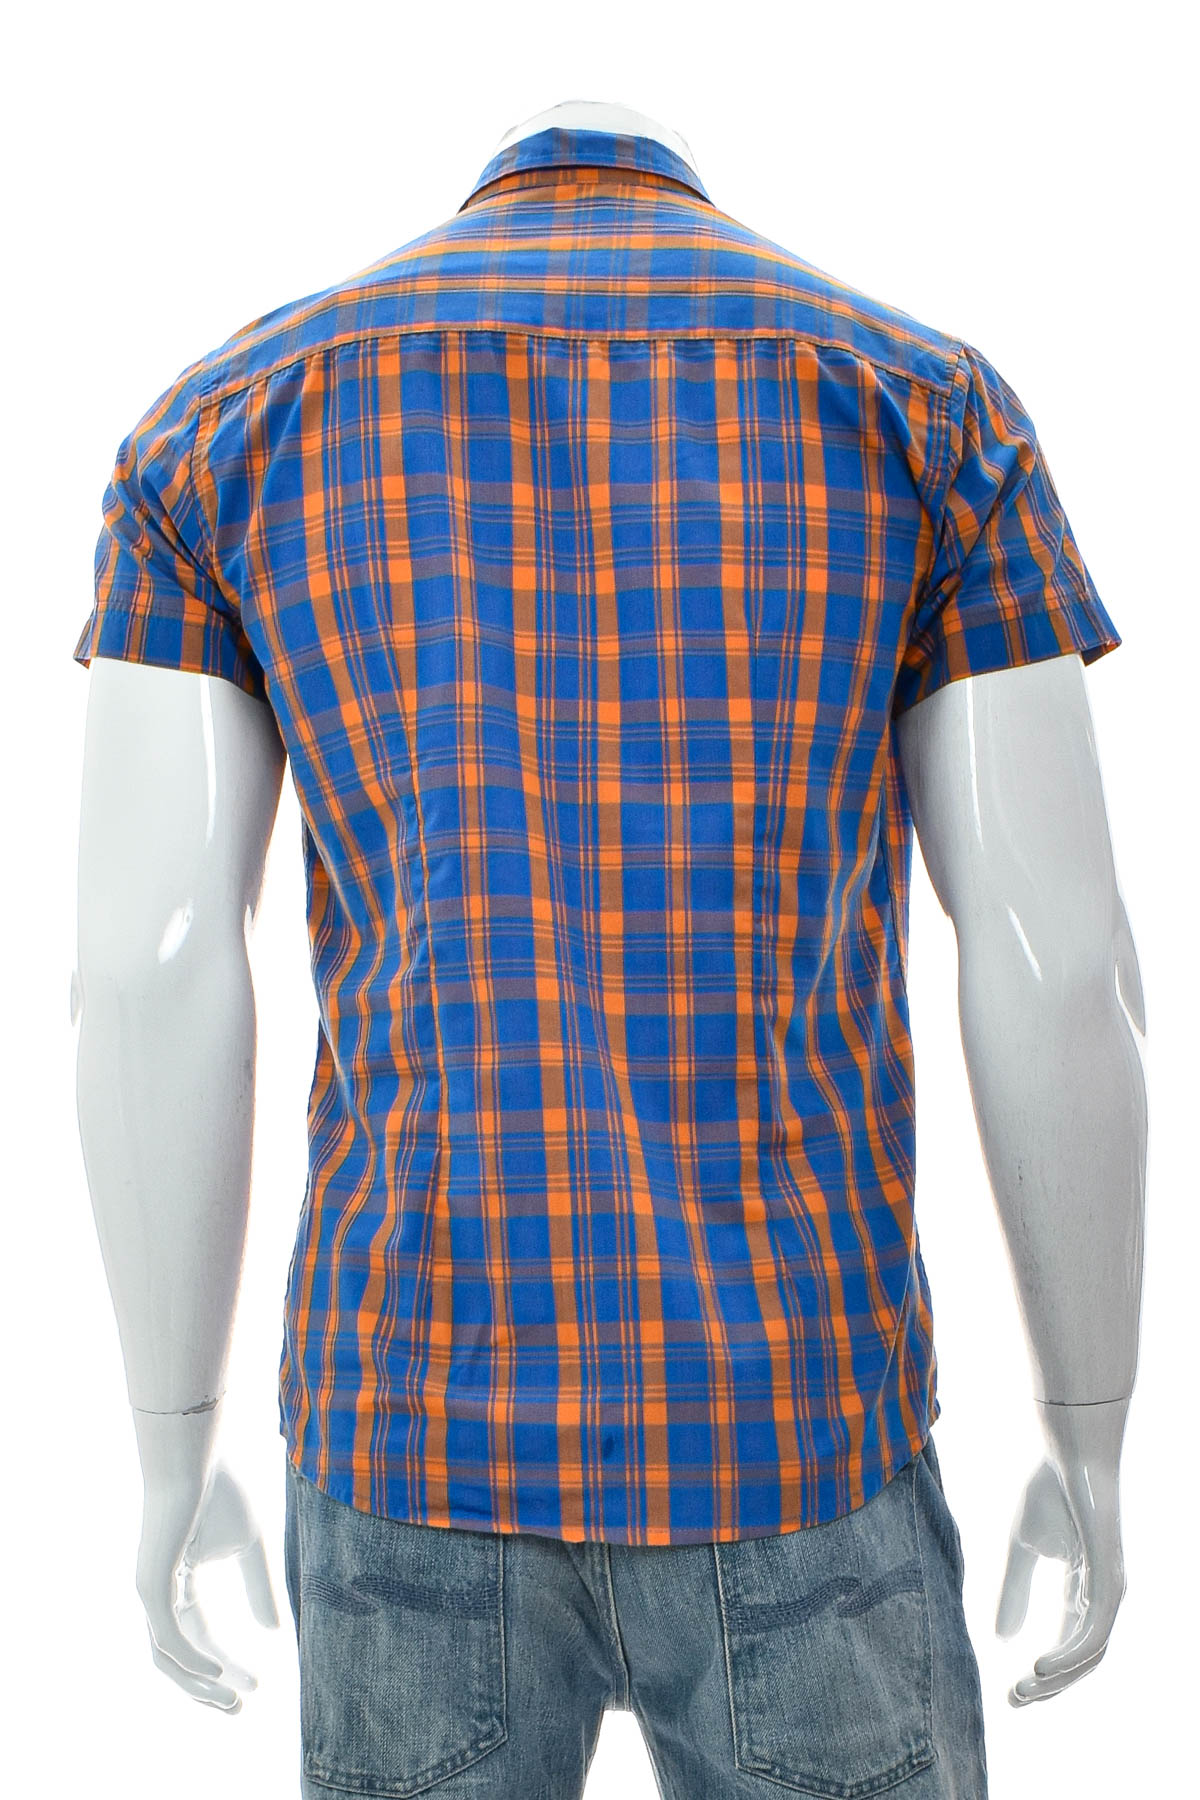 Men's shirt - FSBN - 1